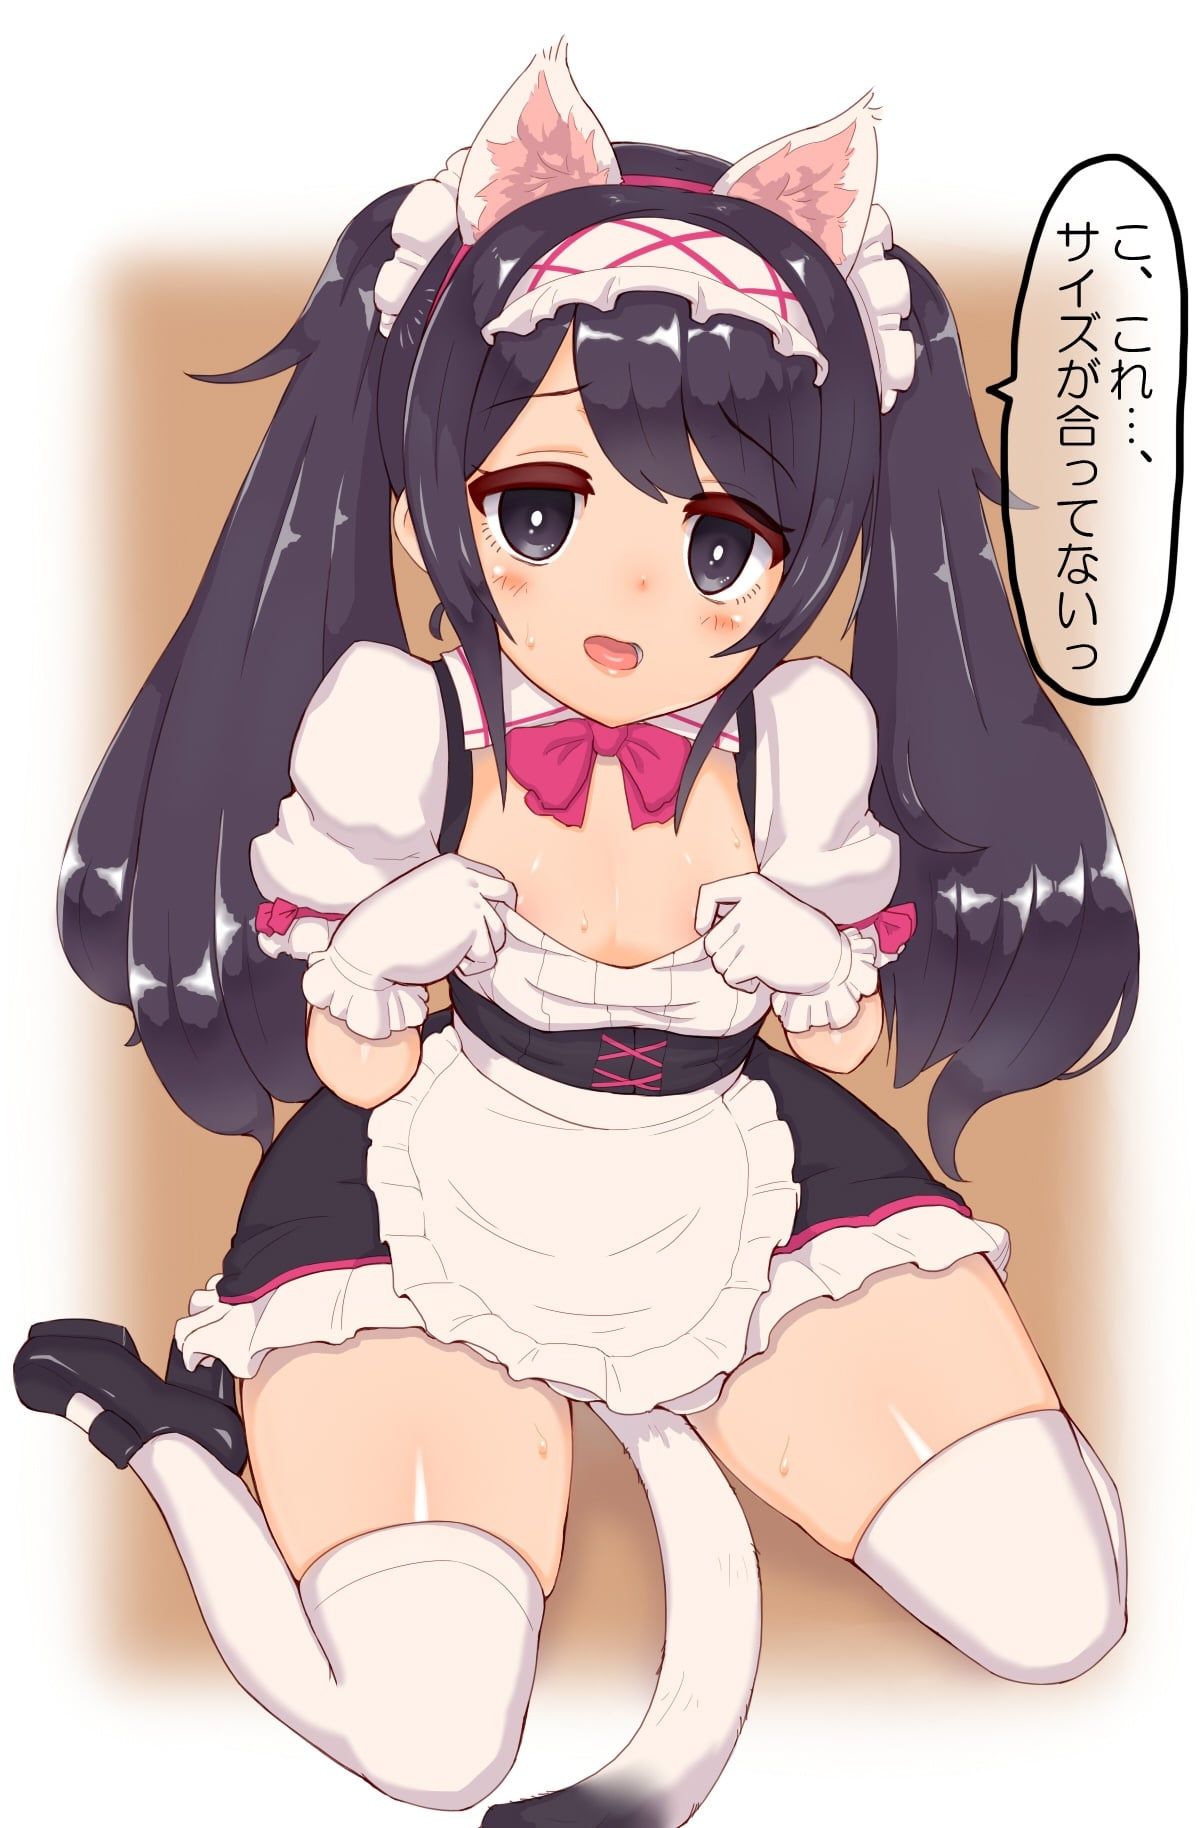 [ロリメイド] want to take care of & wanting ロリメイド to take care if employ a maid anyway, and do it self-indulgently! 33